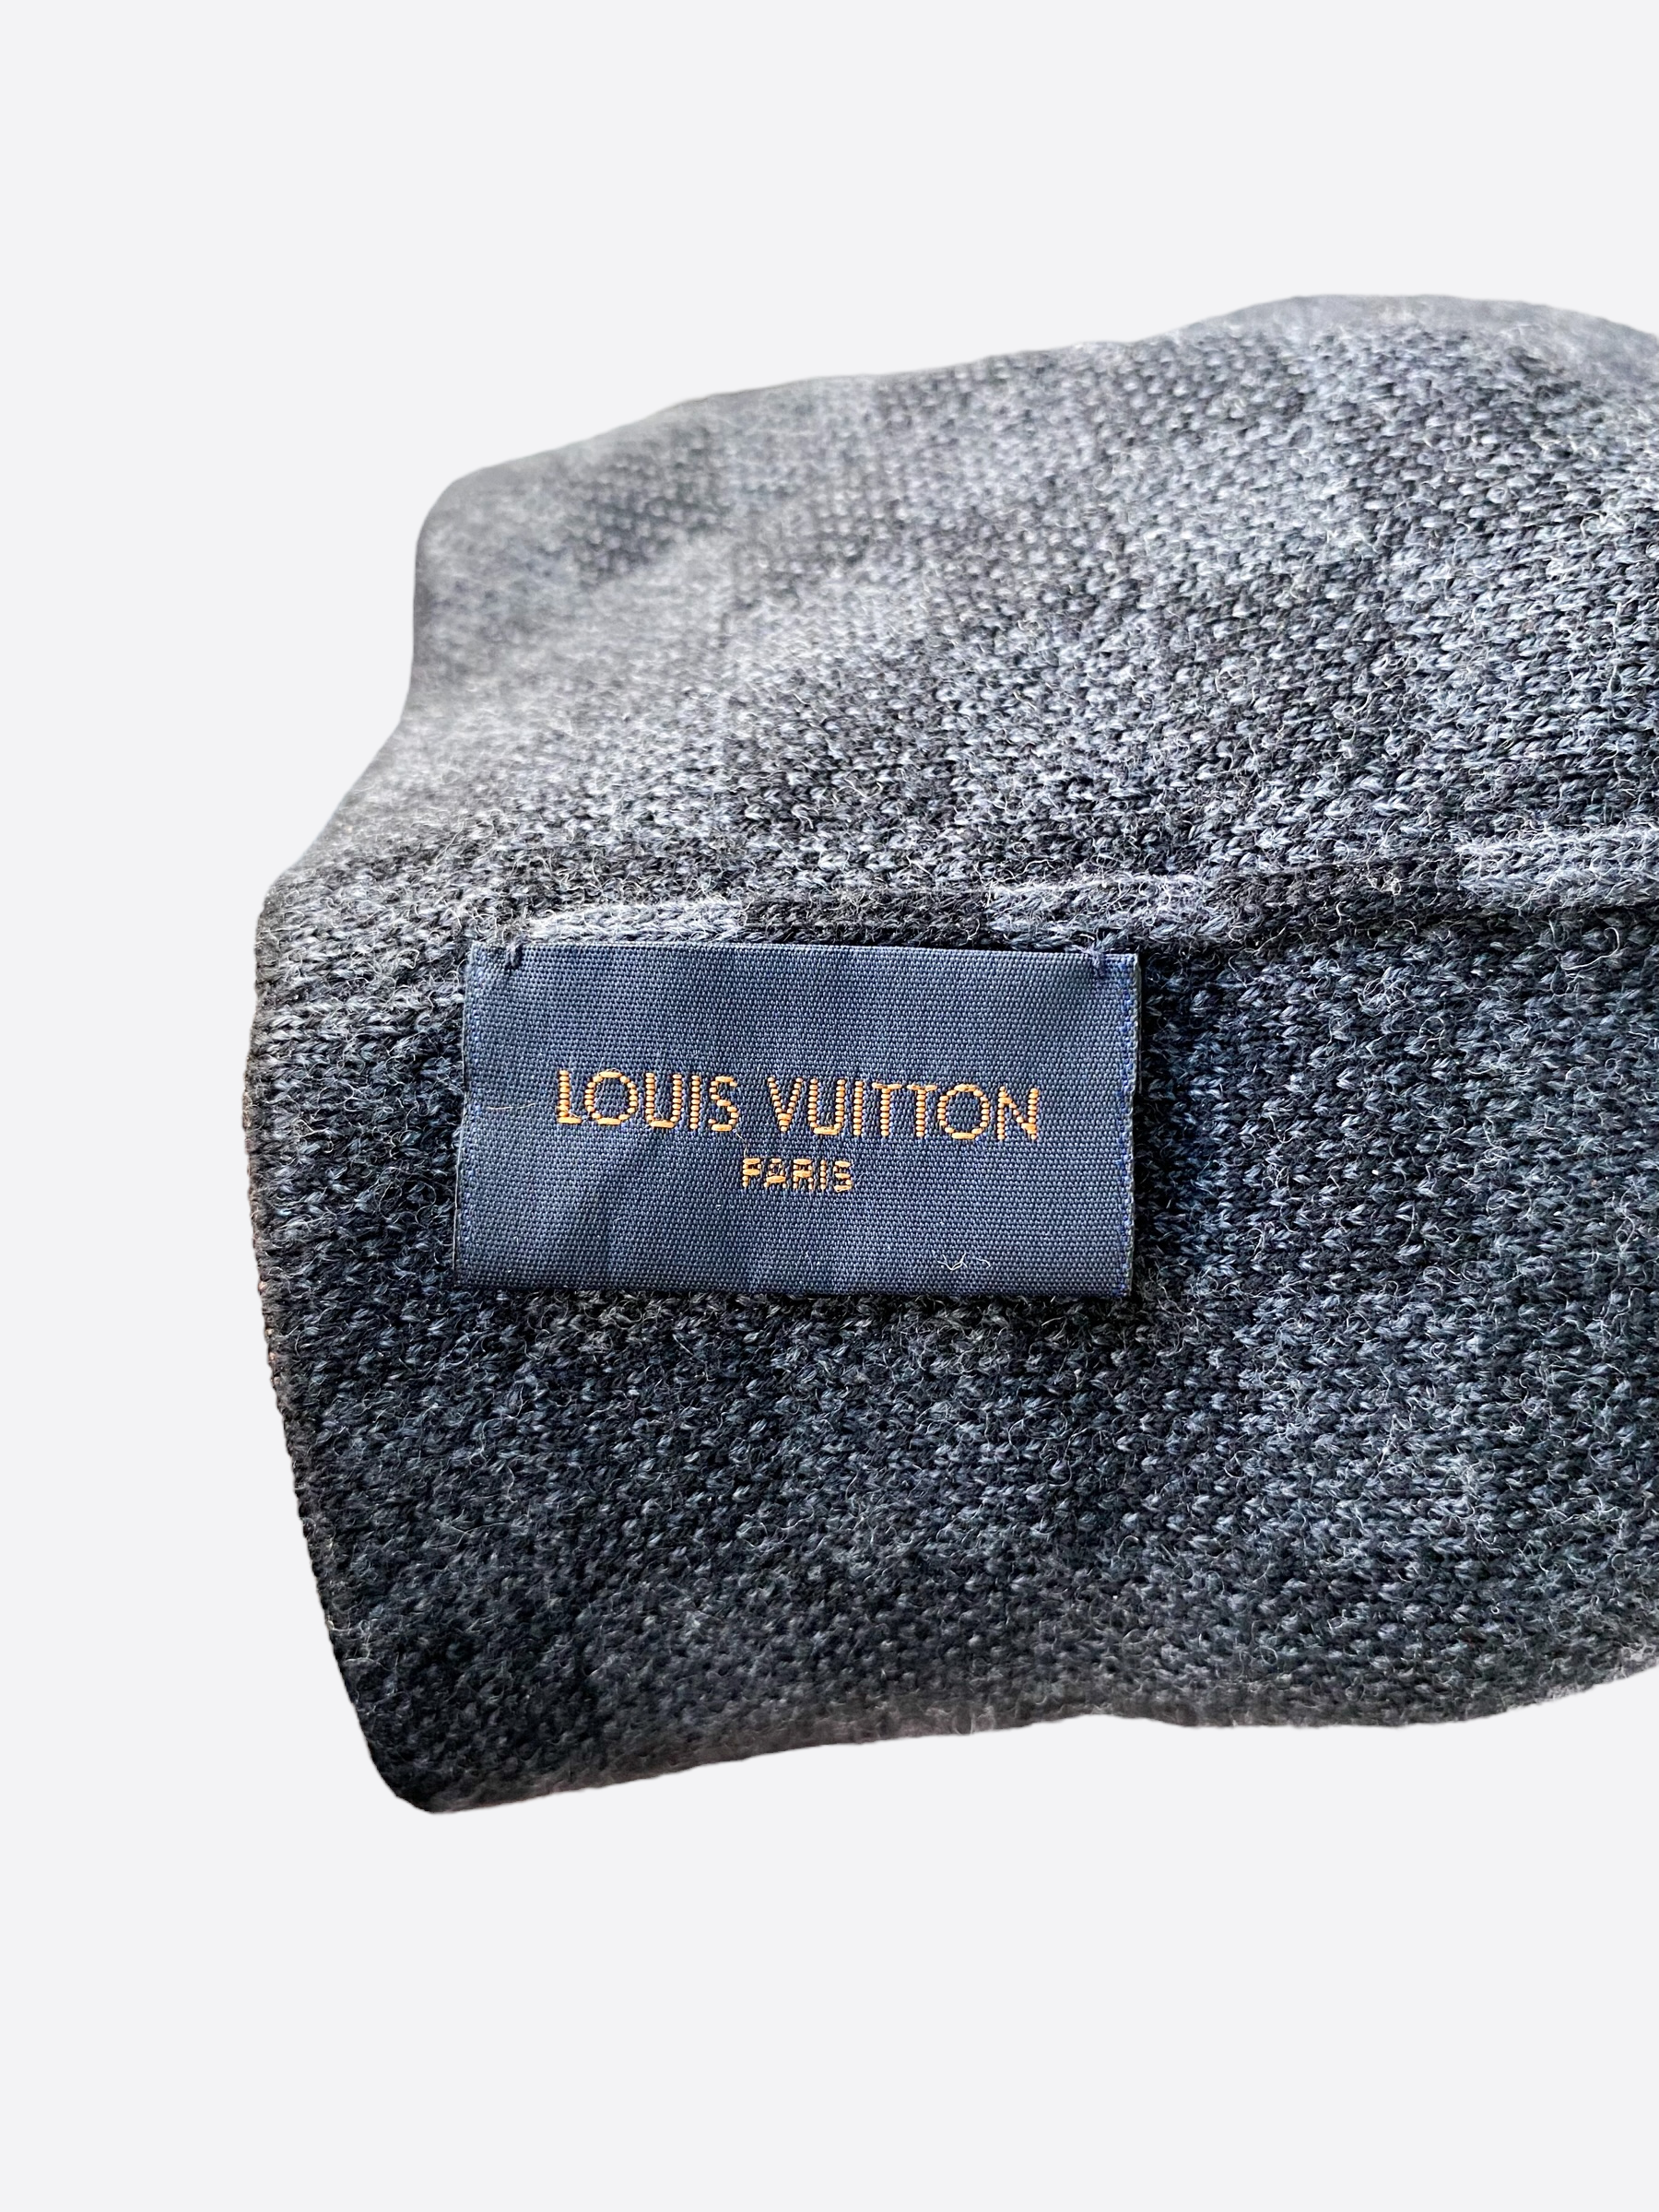 I love the Louis Vuitton Petit Demier Hat!